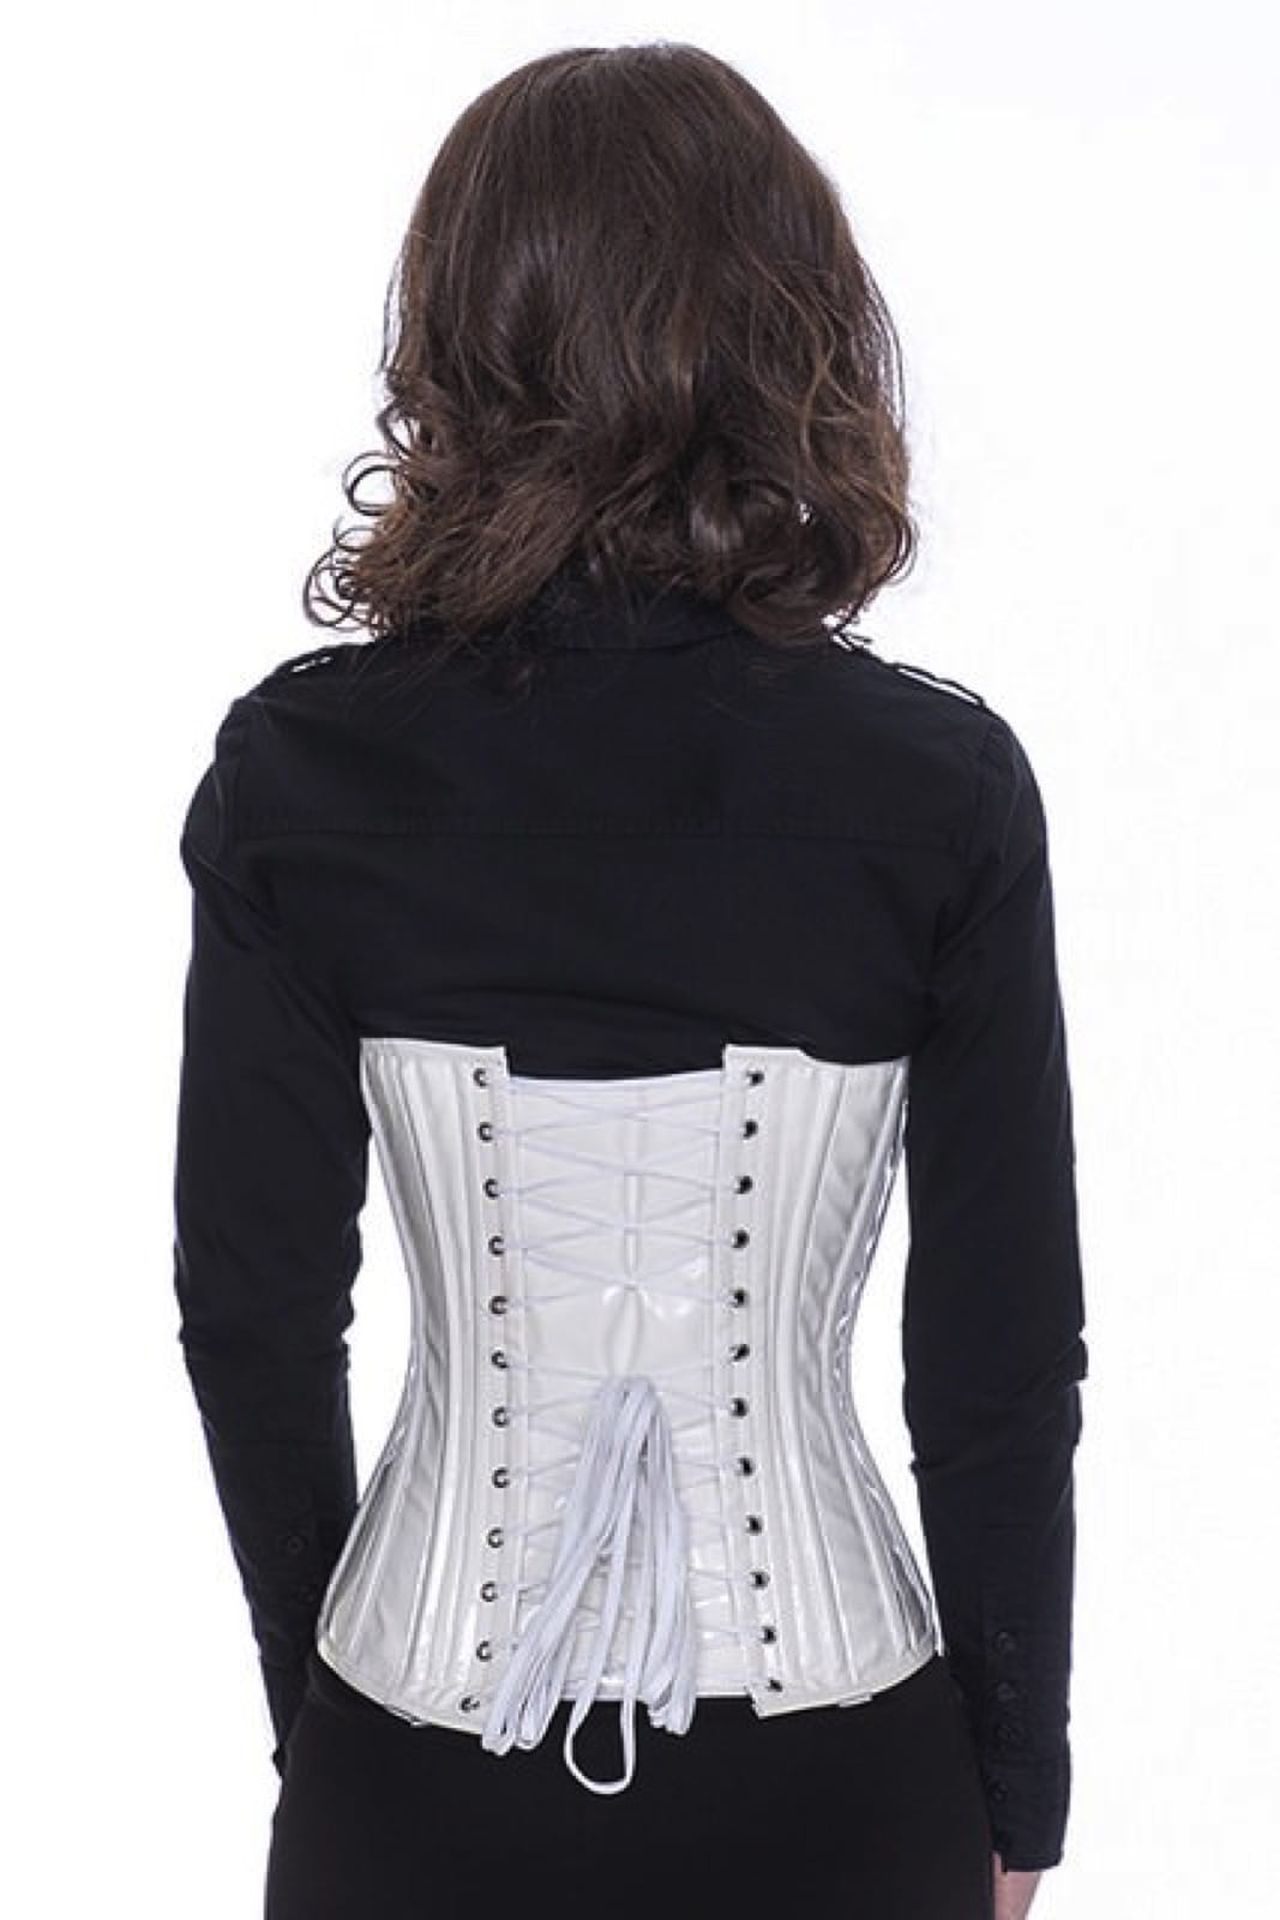 Lak corset wit onderborst met gespen Korset pc76